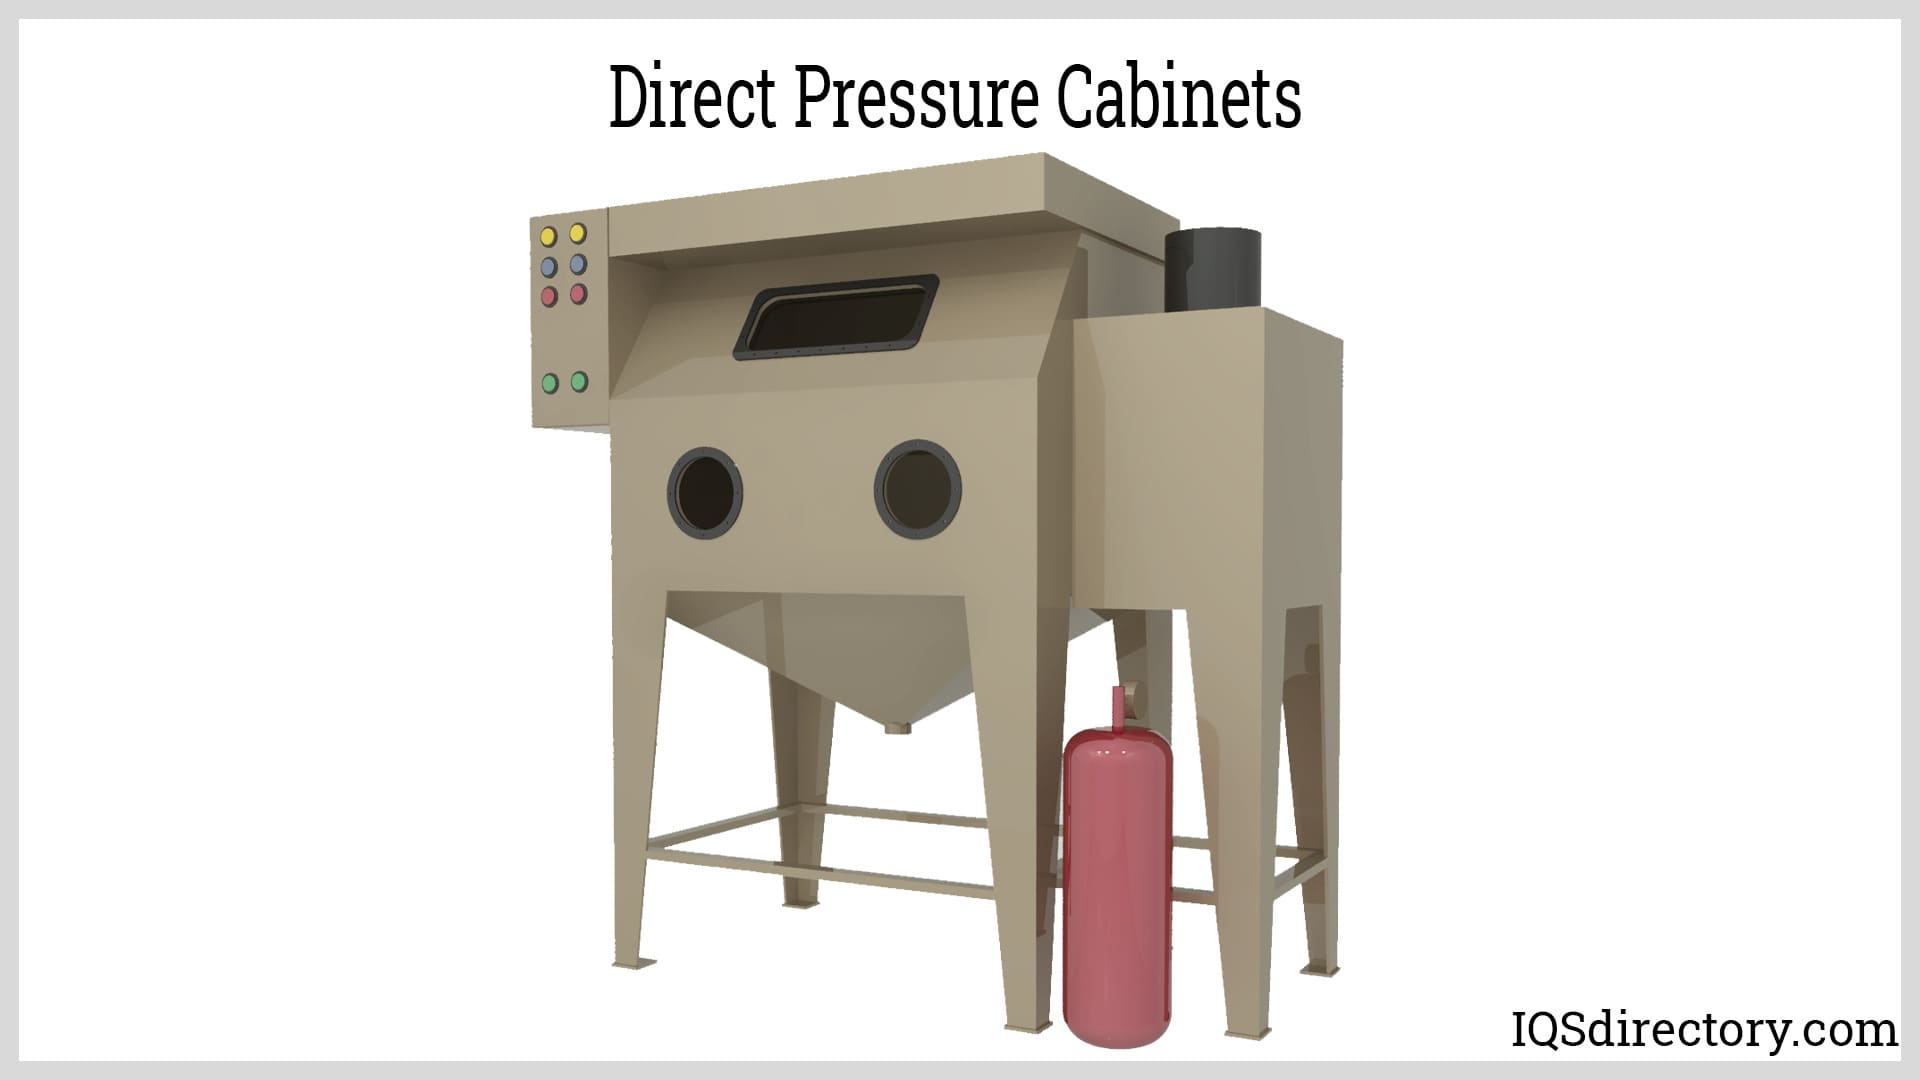 Direct Pressure Cabinets